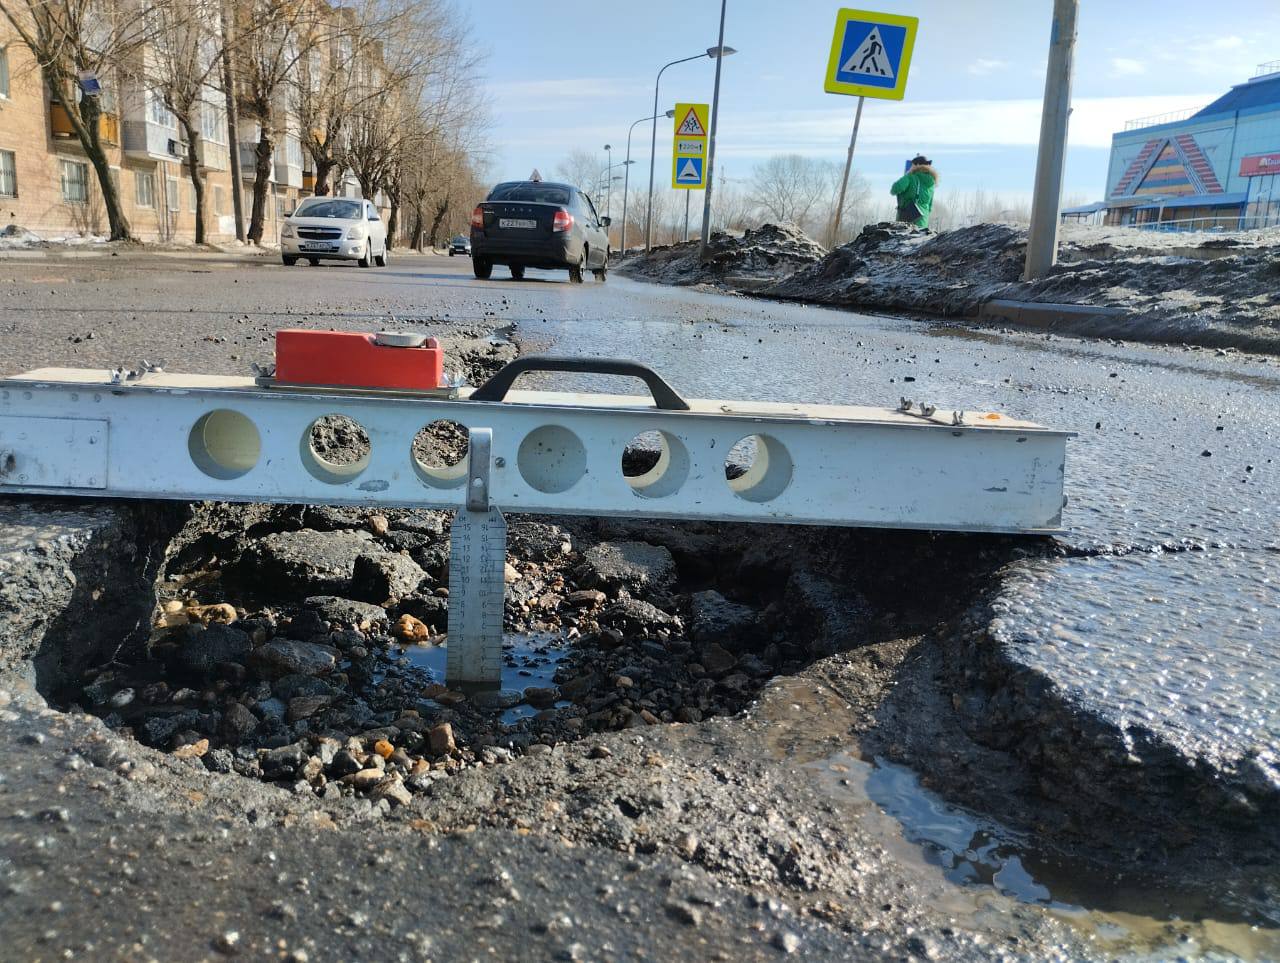 Сотрудники Госавтоинспекции в ходе повседневного надзора осуществляют контроль за состоянием улично-дорожной сети города Ярославля